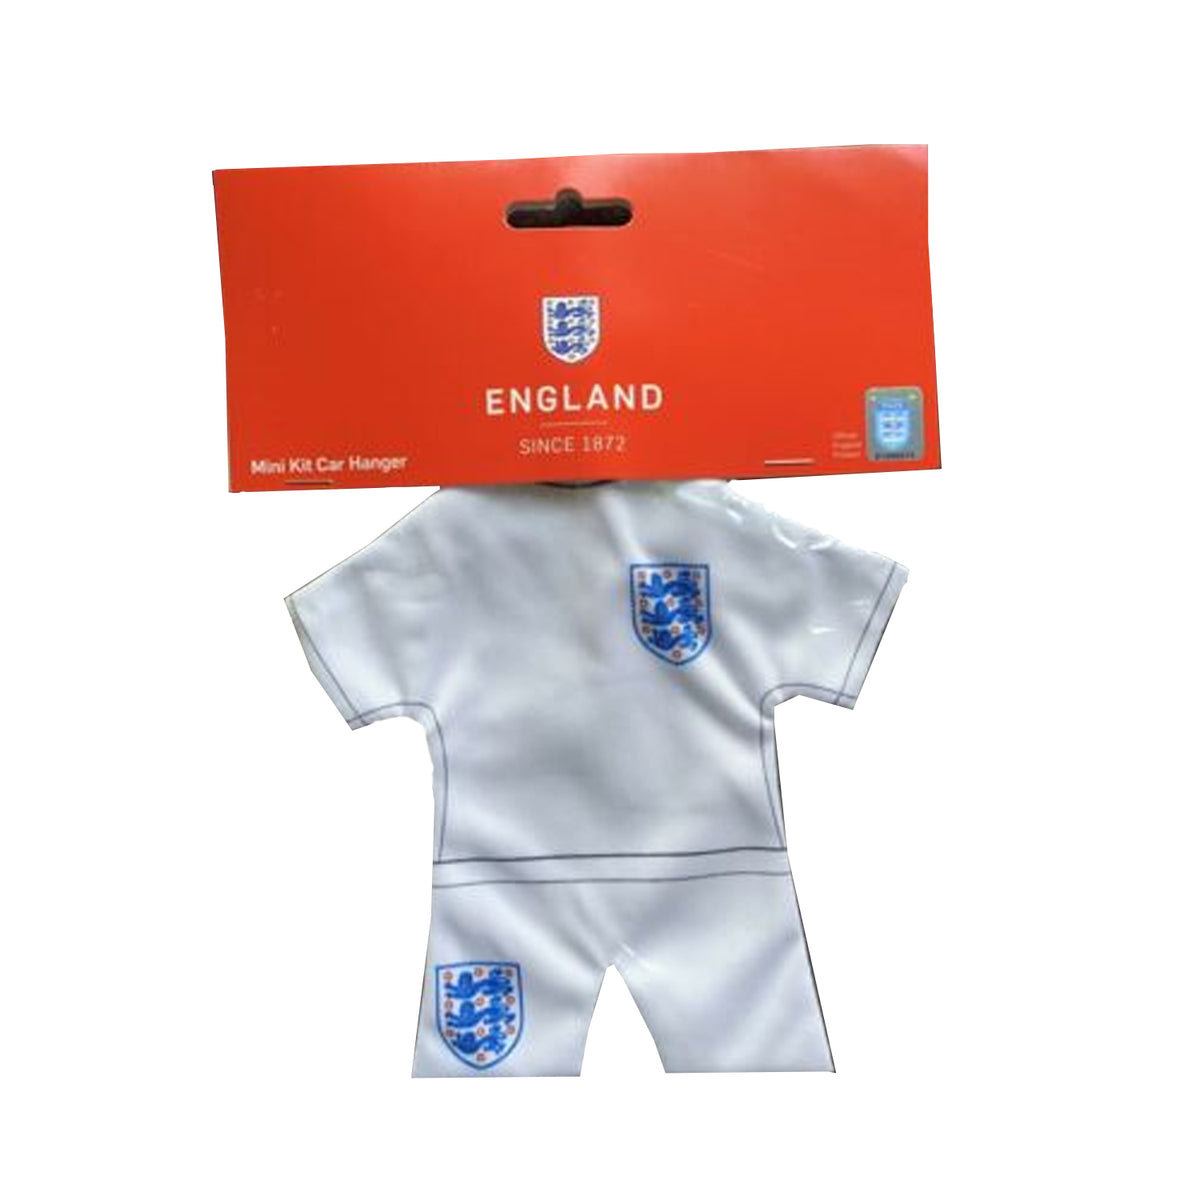 England National Team Mini Kit Car Hanger